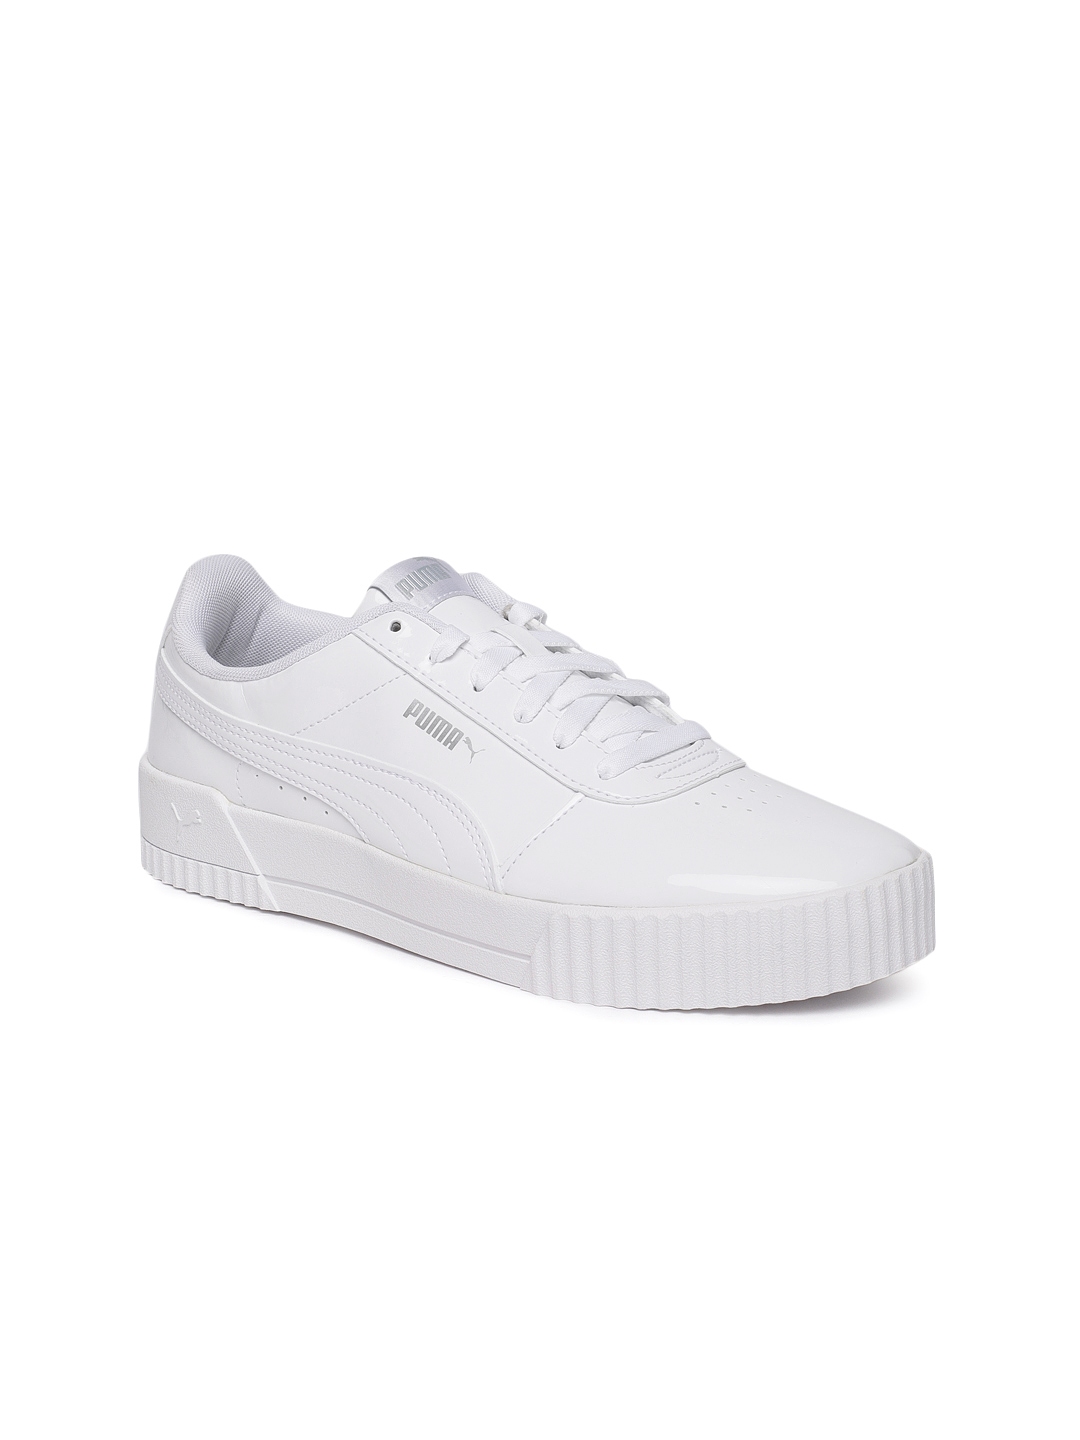 puma ladies white shoes